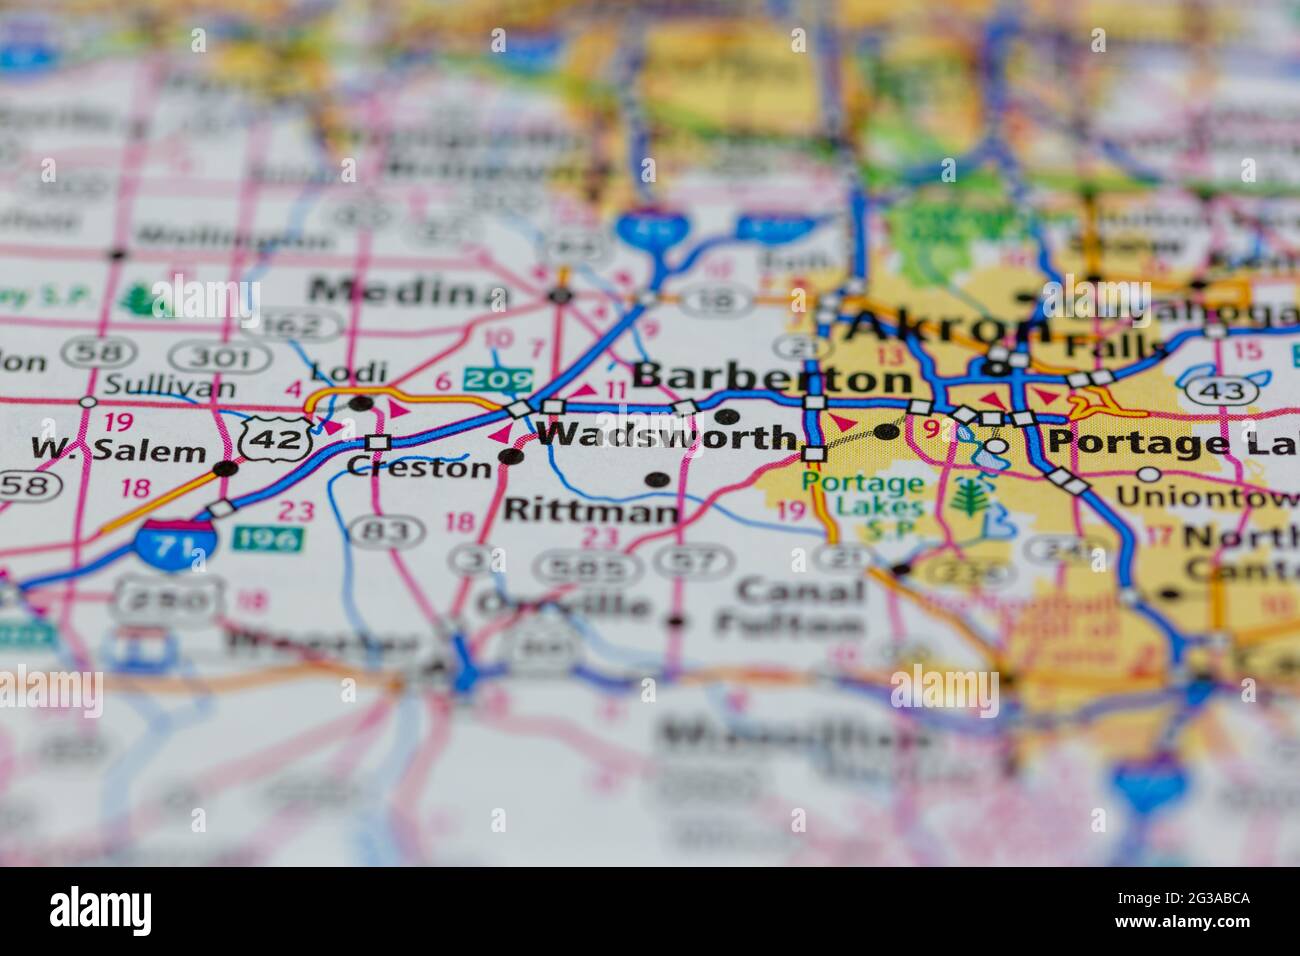 Wadsworth Ohio USA montré sur une carte de géographie ou une carte routière Banque D'Images